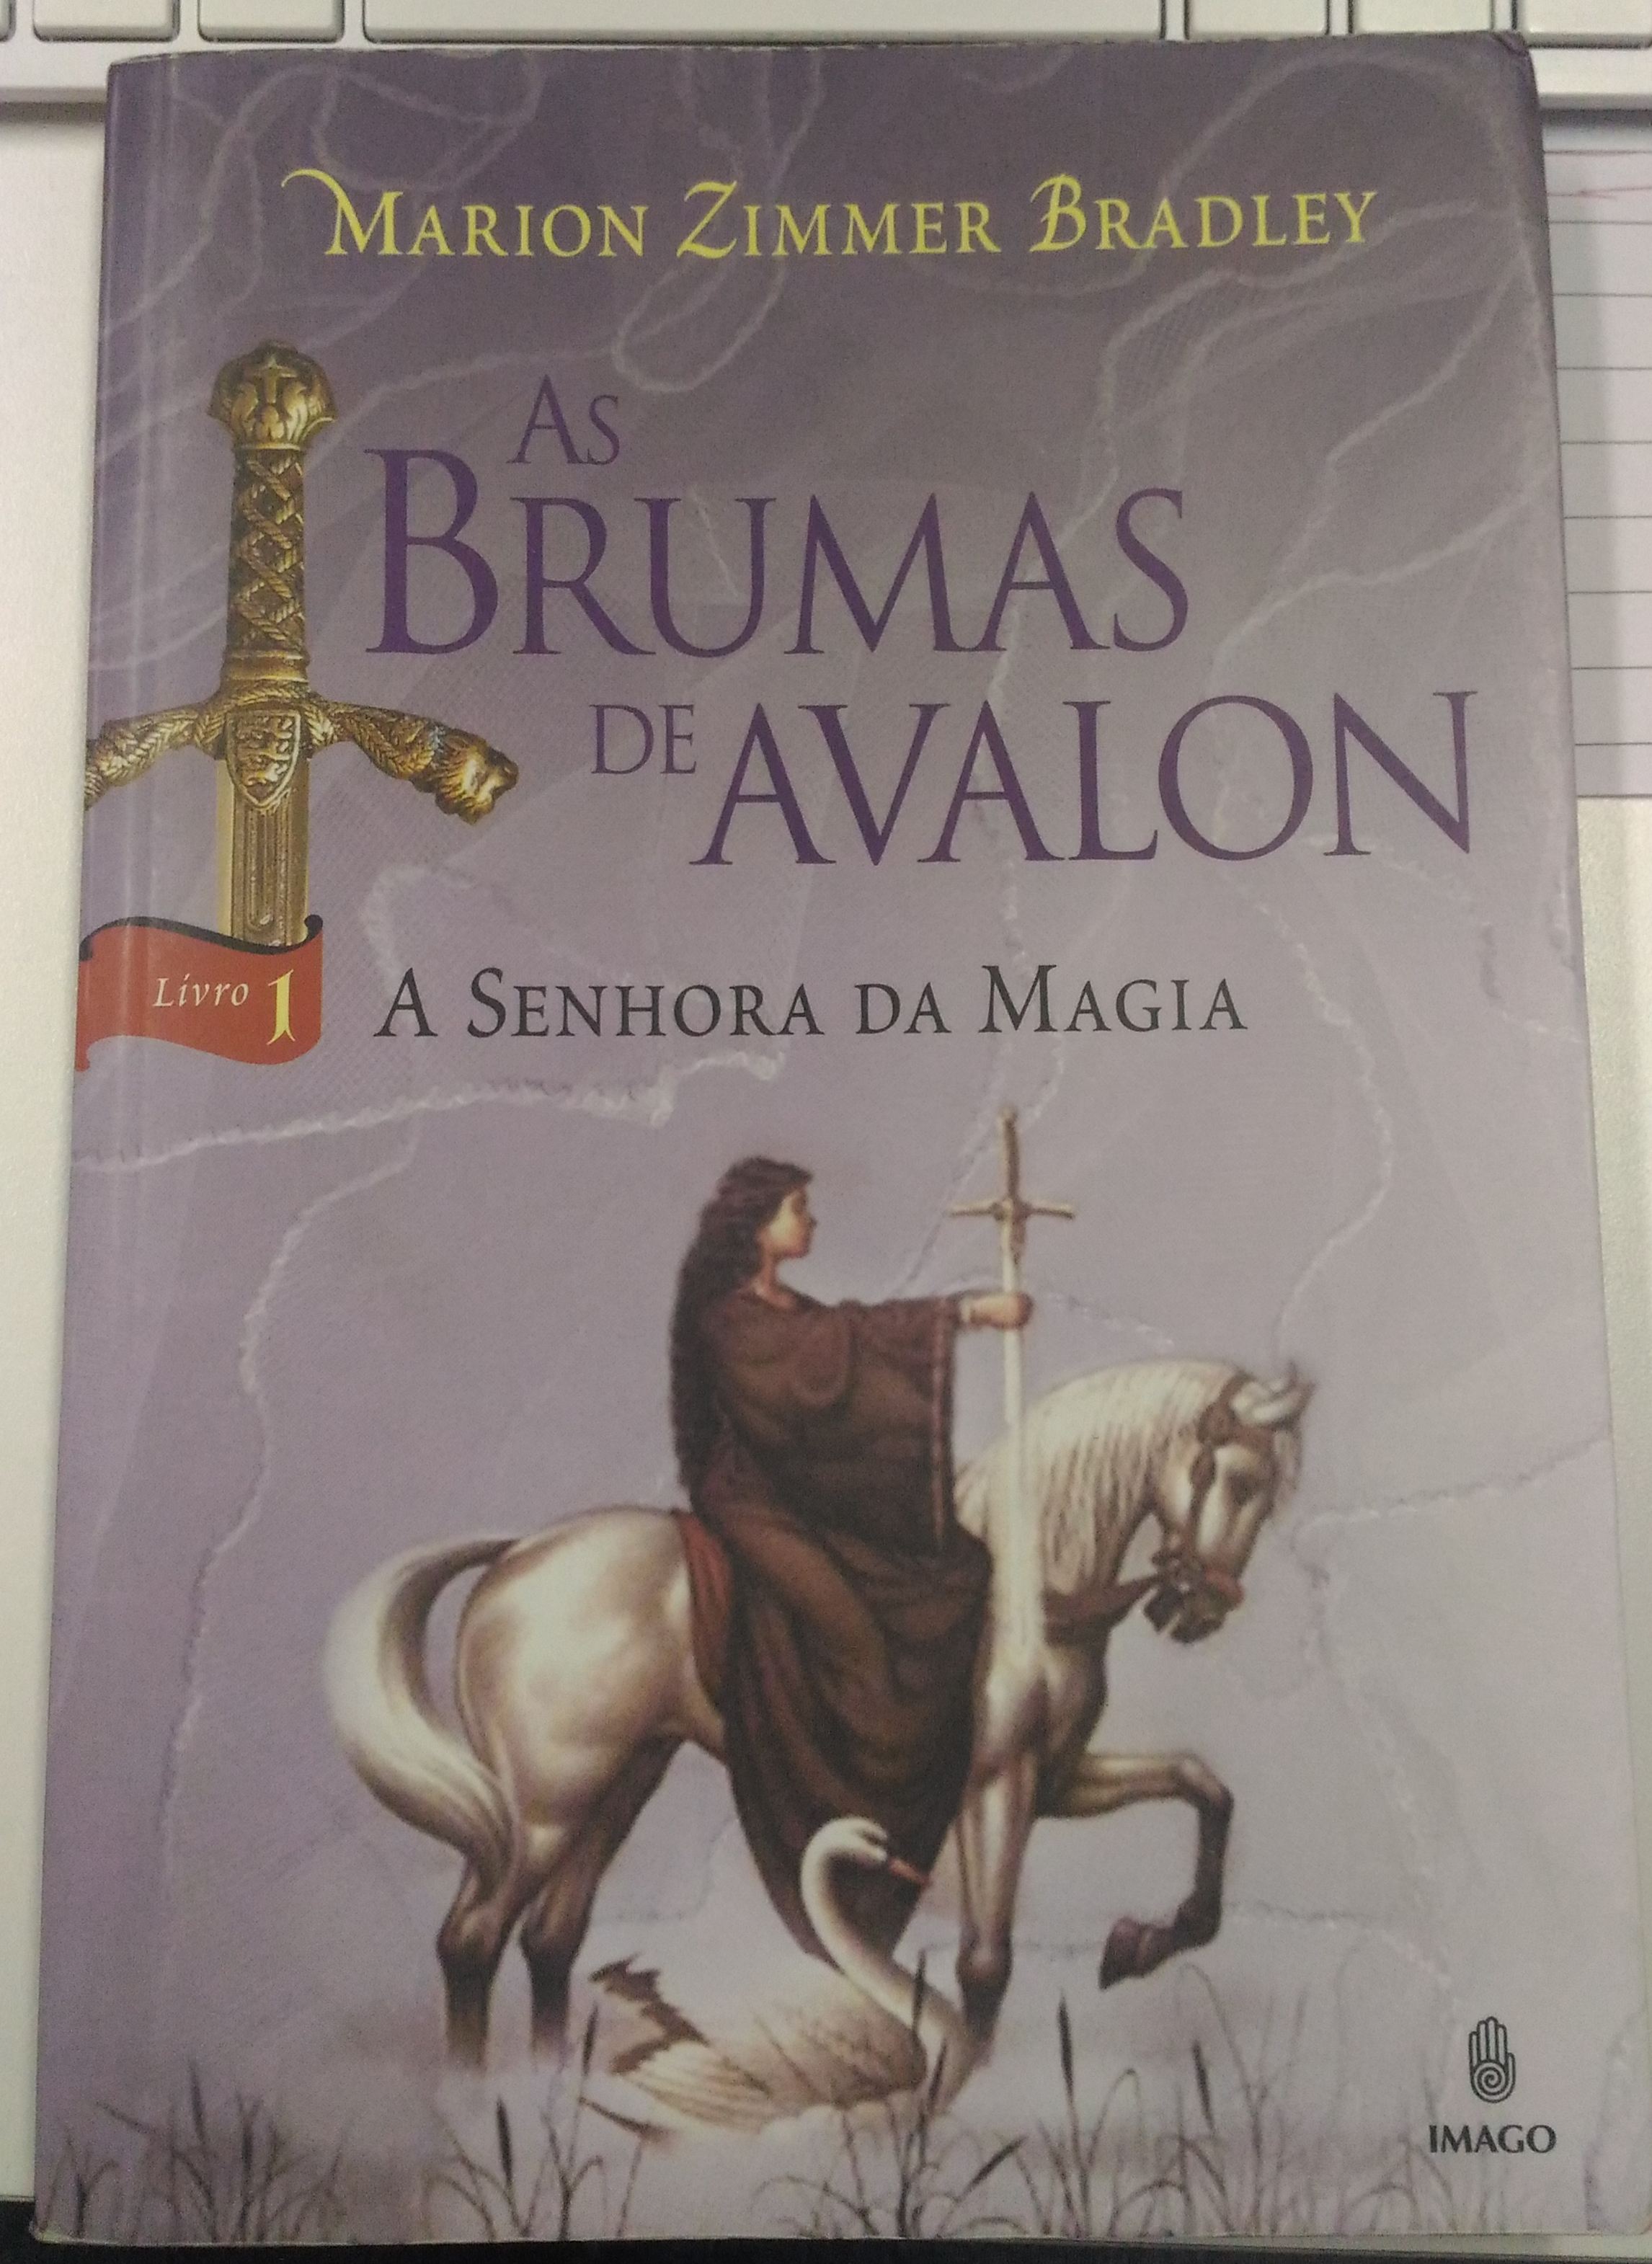 Capa - Livro 1 - As Brumas de Avalon - A Senhora da Magia